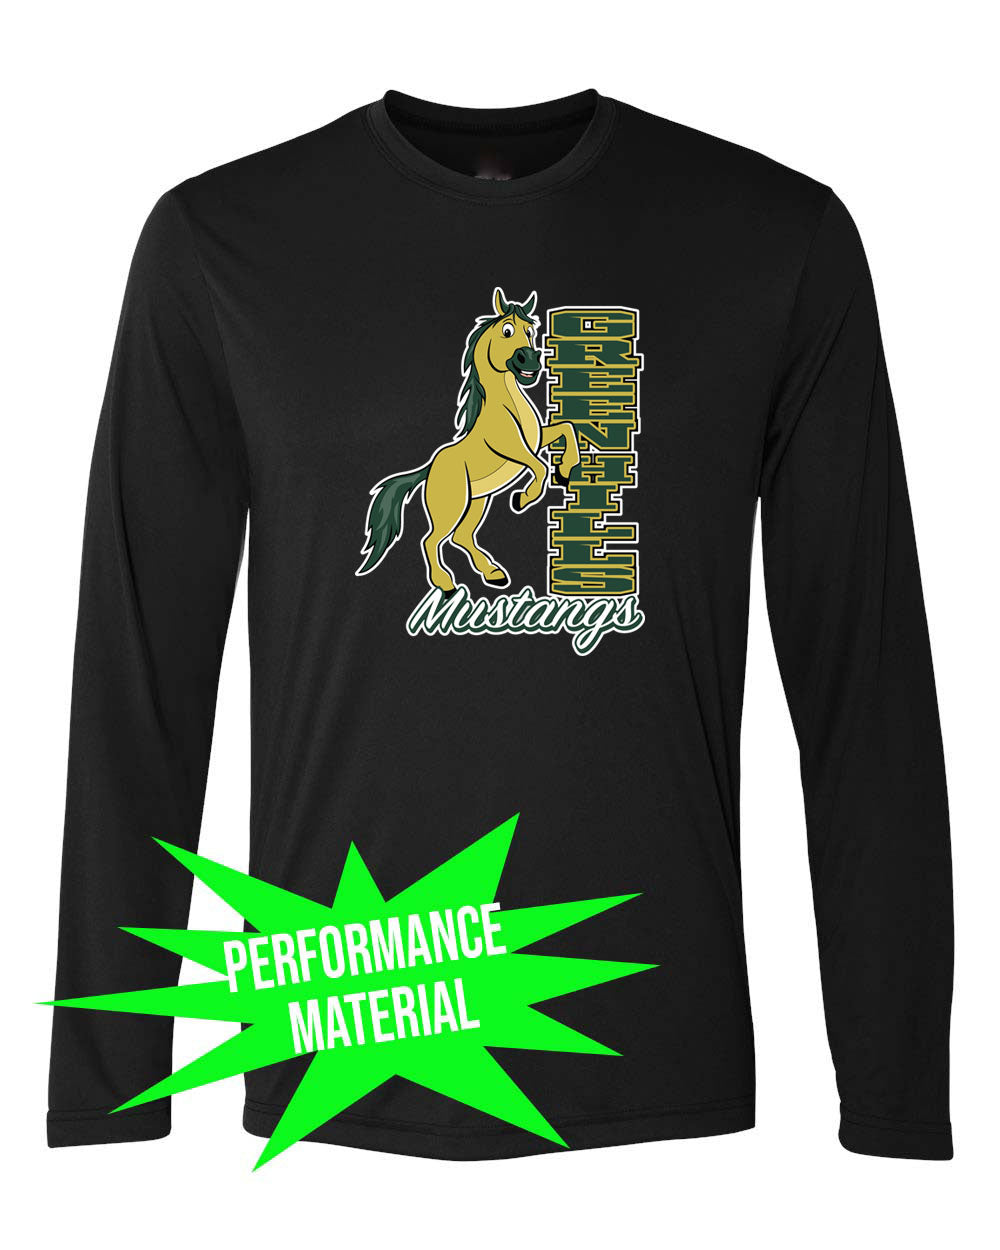 Green Hills Performance Material Long Sleeve Shirt Design 15